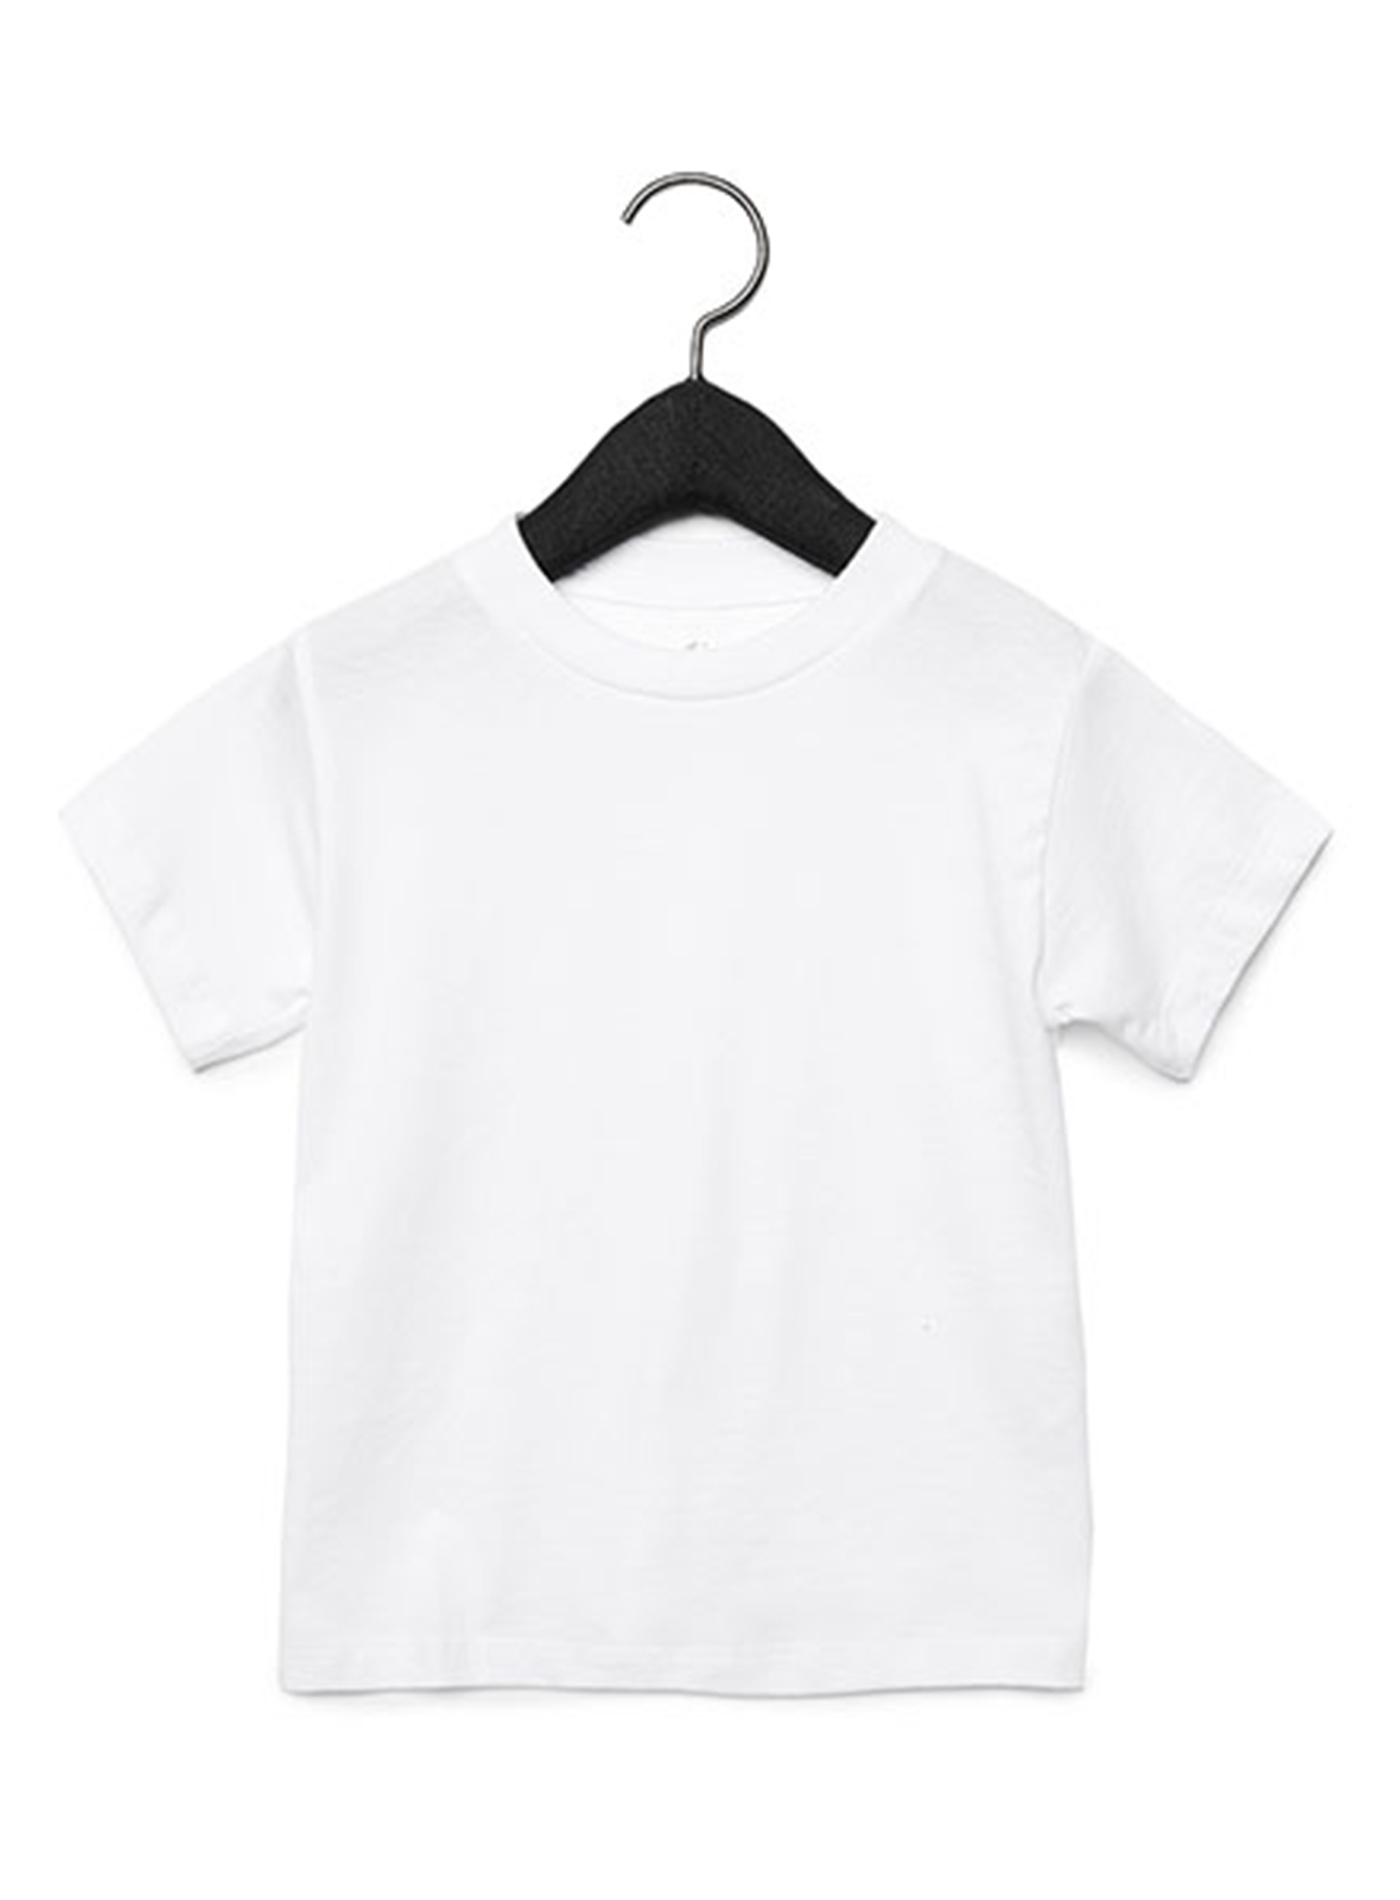 Dětské tričko Jersey - Bílá 3T (98)